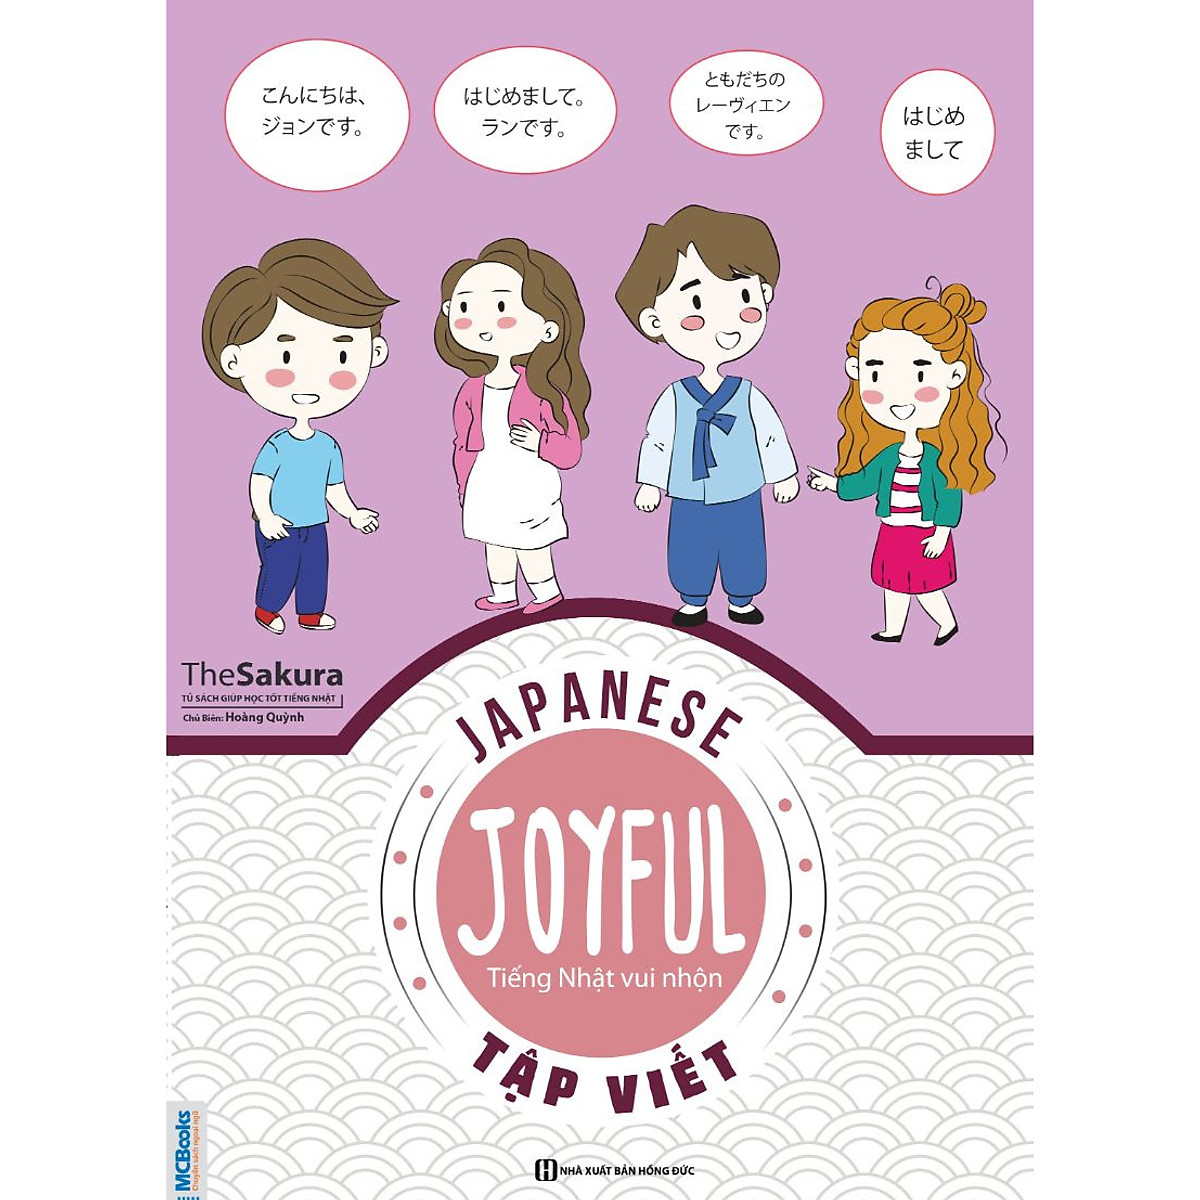 Joyful Japanese - Tiếng Nhật Vui Nhộn - Tập Viết ( tải APP MCBOOKS để trải nghiệm hệ sinh thái MCPlatform) Tặng Bookmark tuyệt đẹp